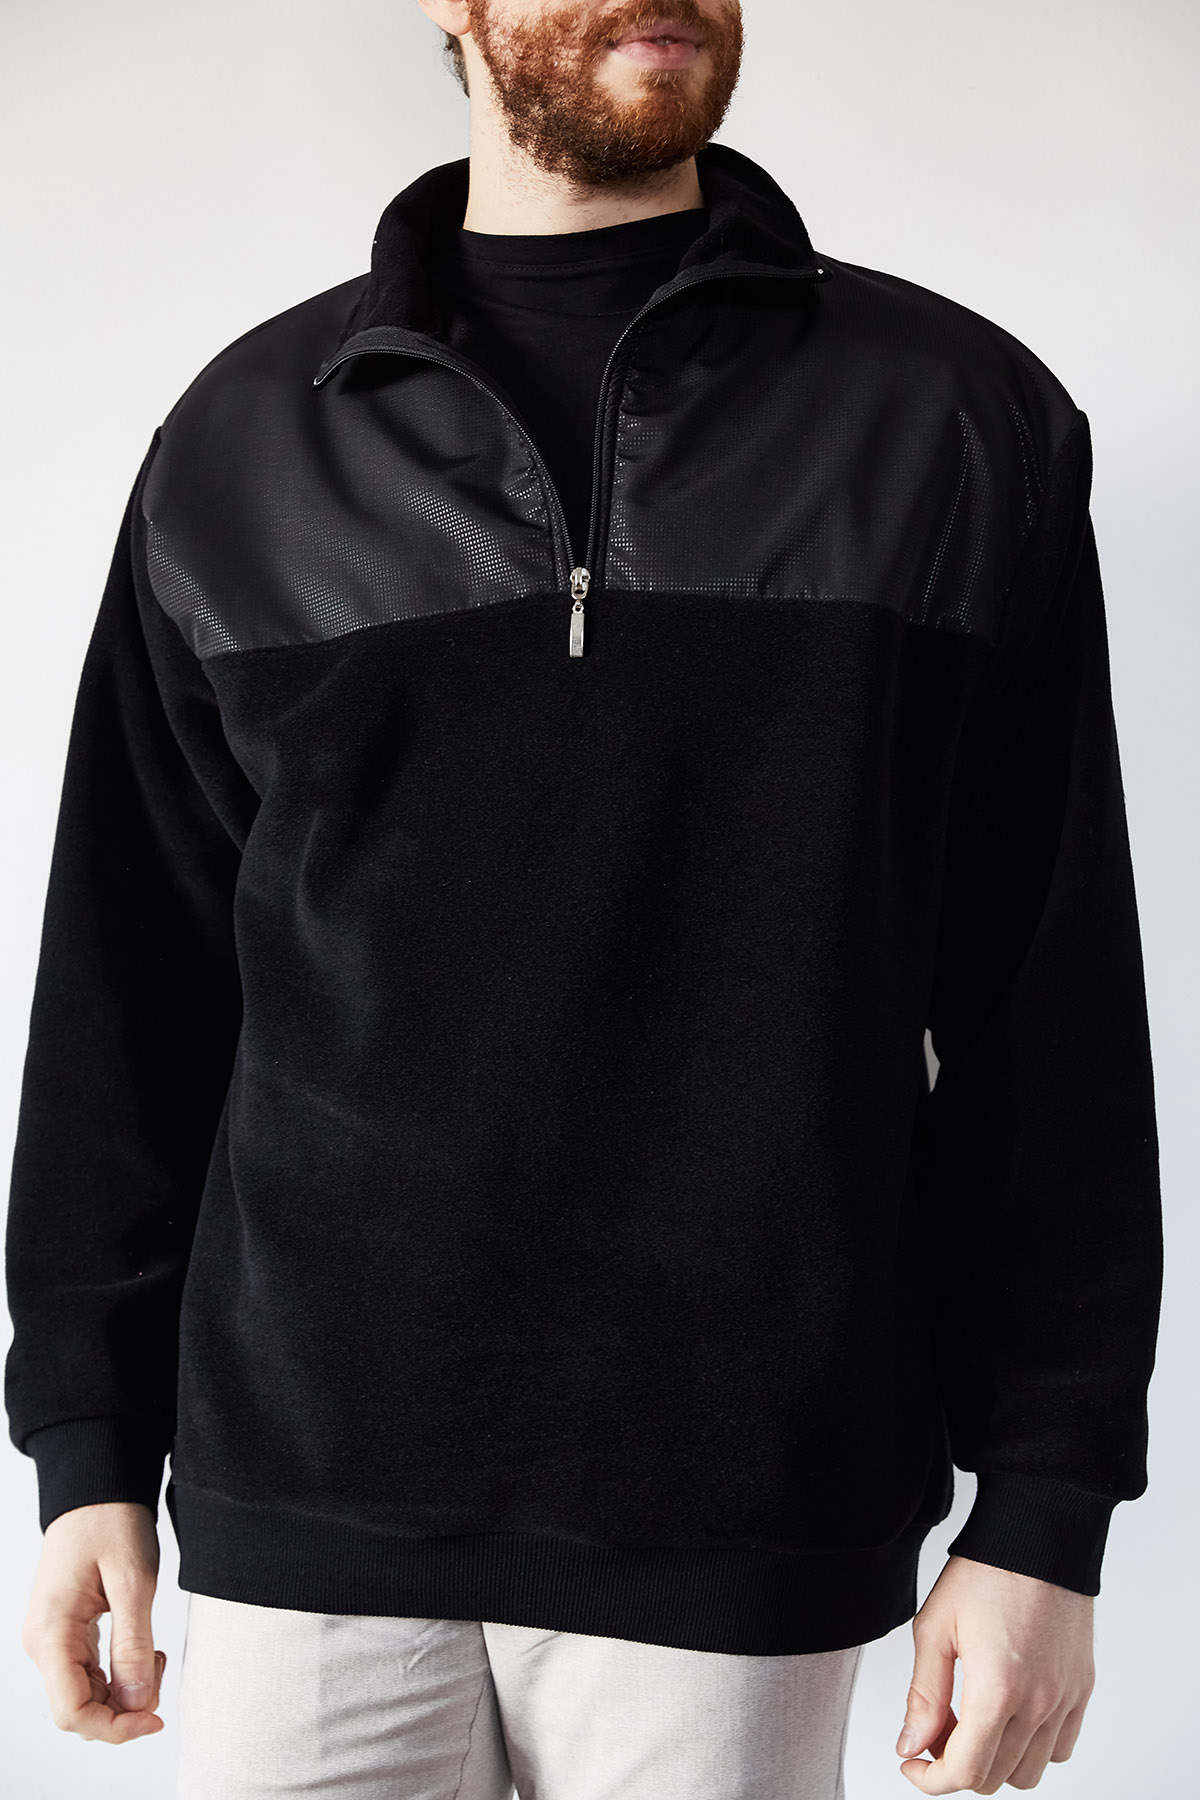 Siyah Deri Garnili Polar Sweatshirt 1KXE8-44233-02 - 1